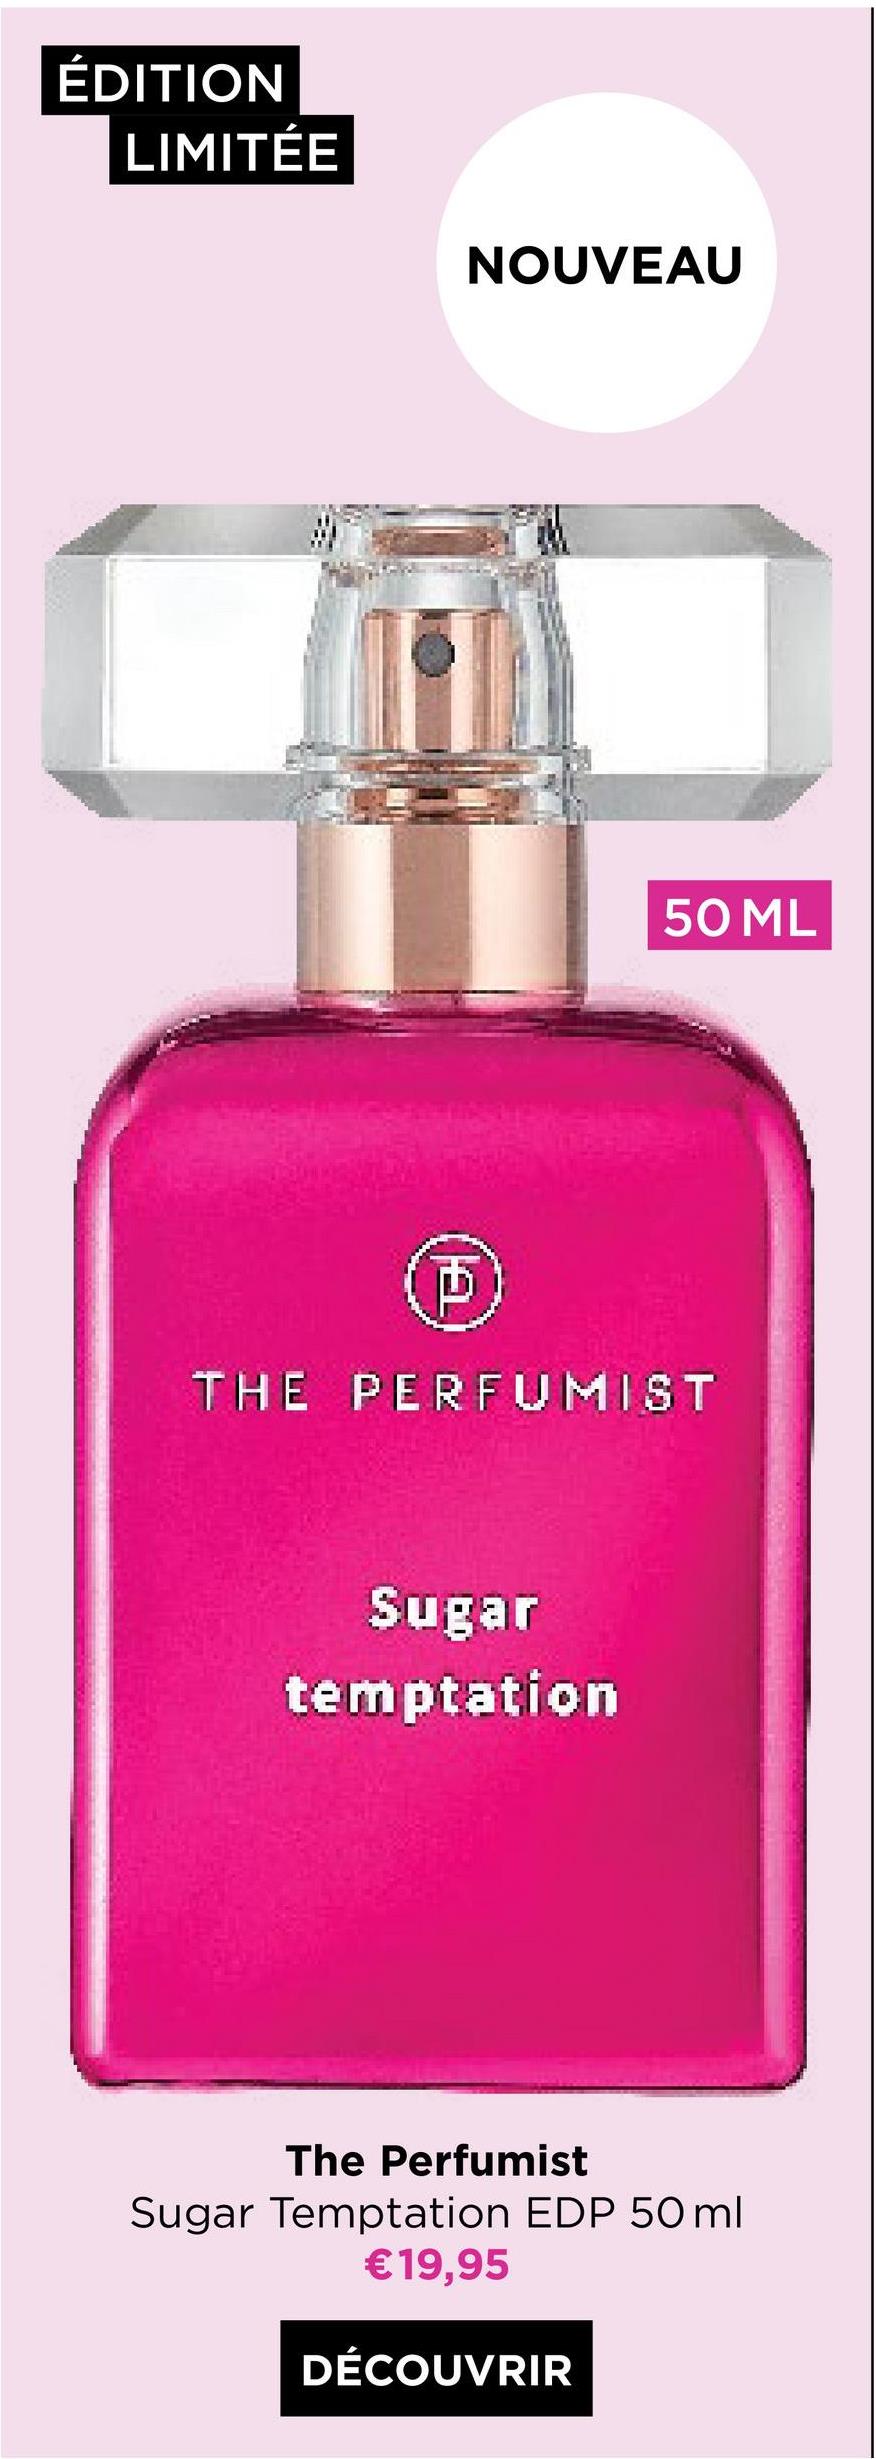 ÉDITION
LIMITÉE
NOUVEAU
D
50 ML
THE PERFUMIST
Sugar
temptation
The Perfumist
Sugar Temptation EDP 50ml
€19,95
DÉCOUVRIR